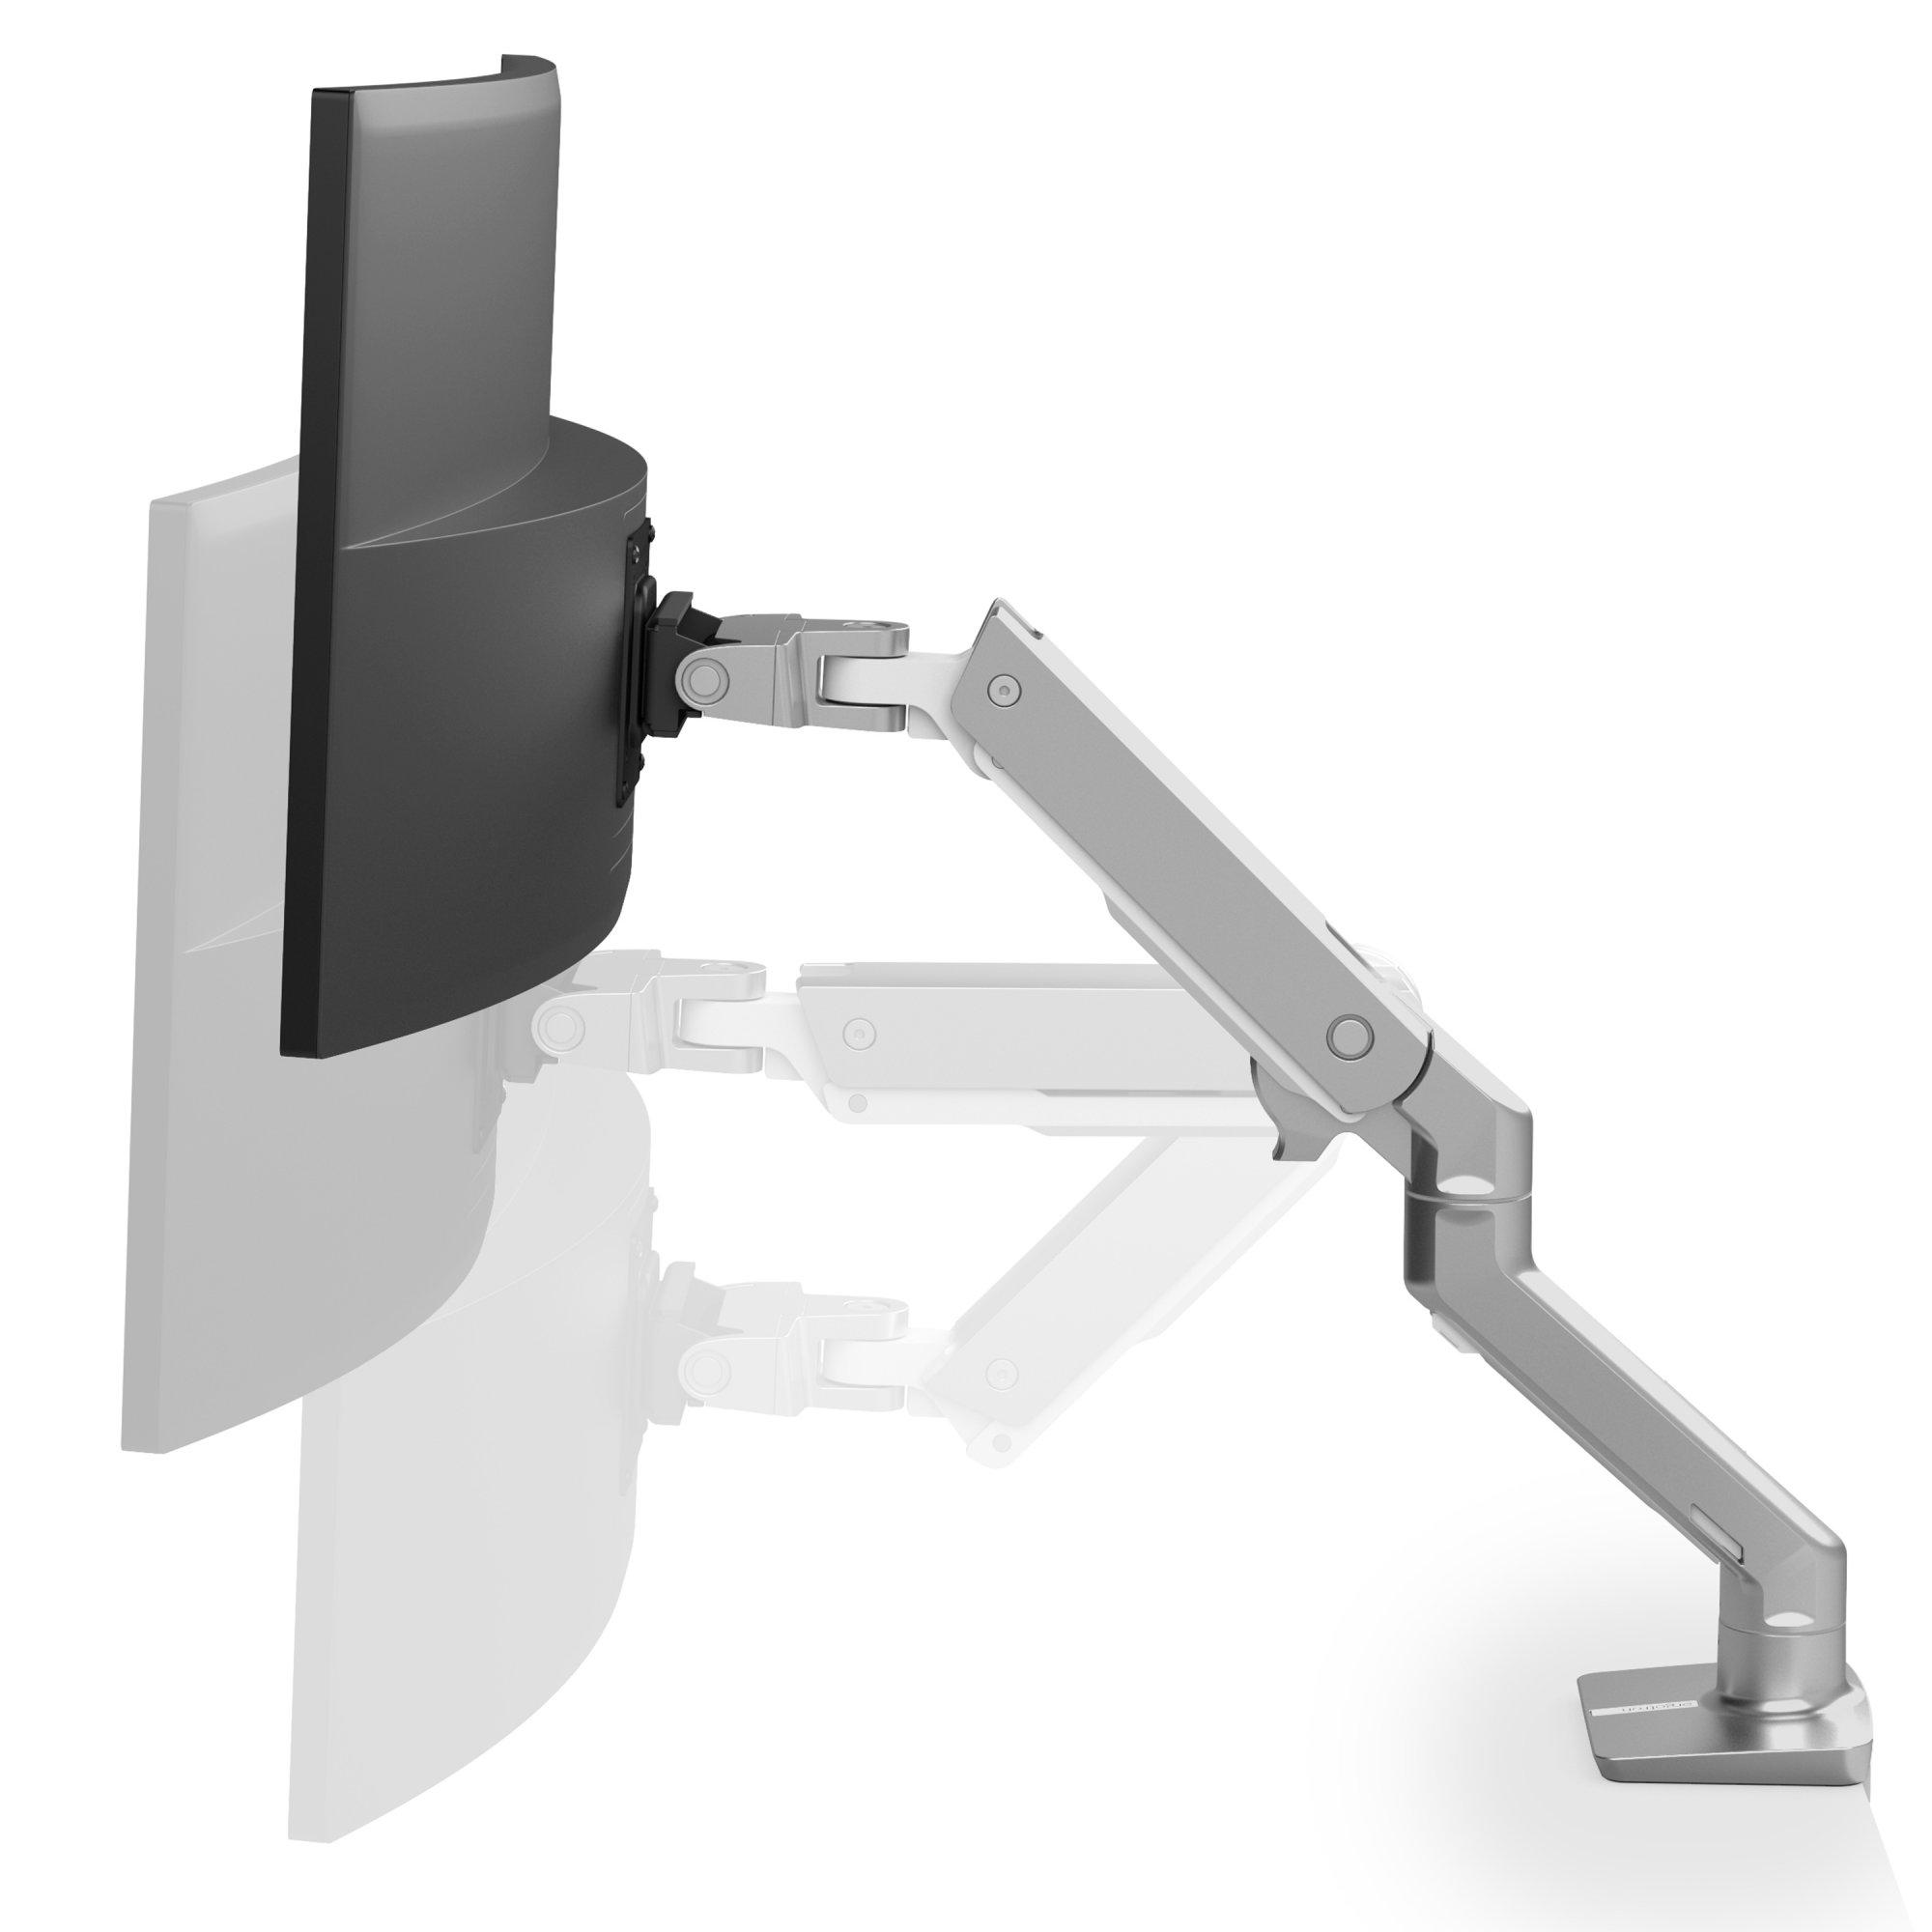 Ergotron 45-475-026 HX Desk Mount Single Monitor Arm (polished aluminum)